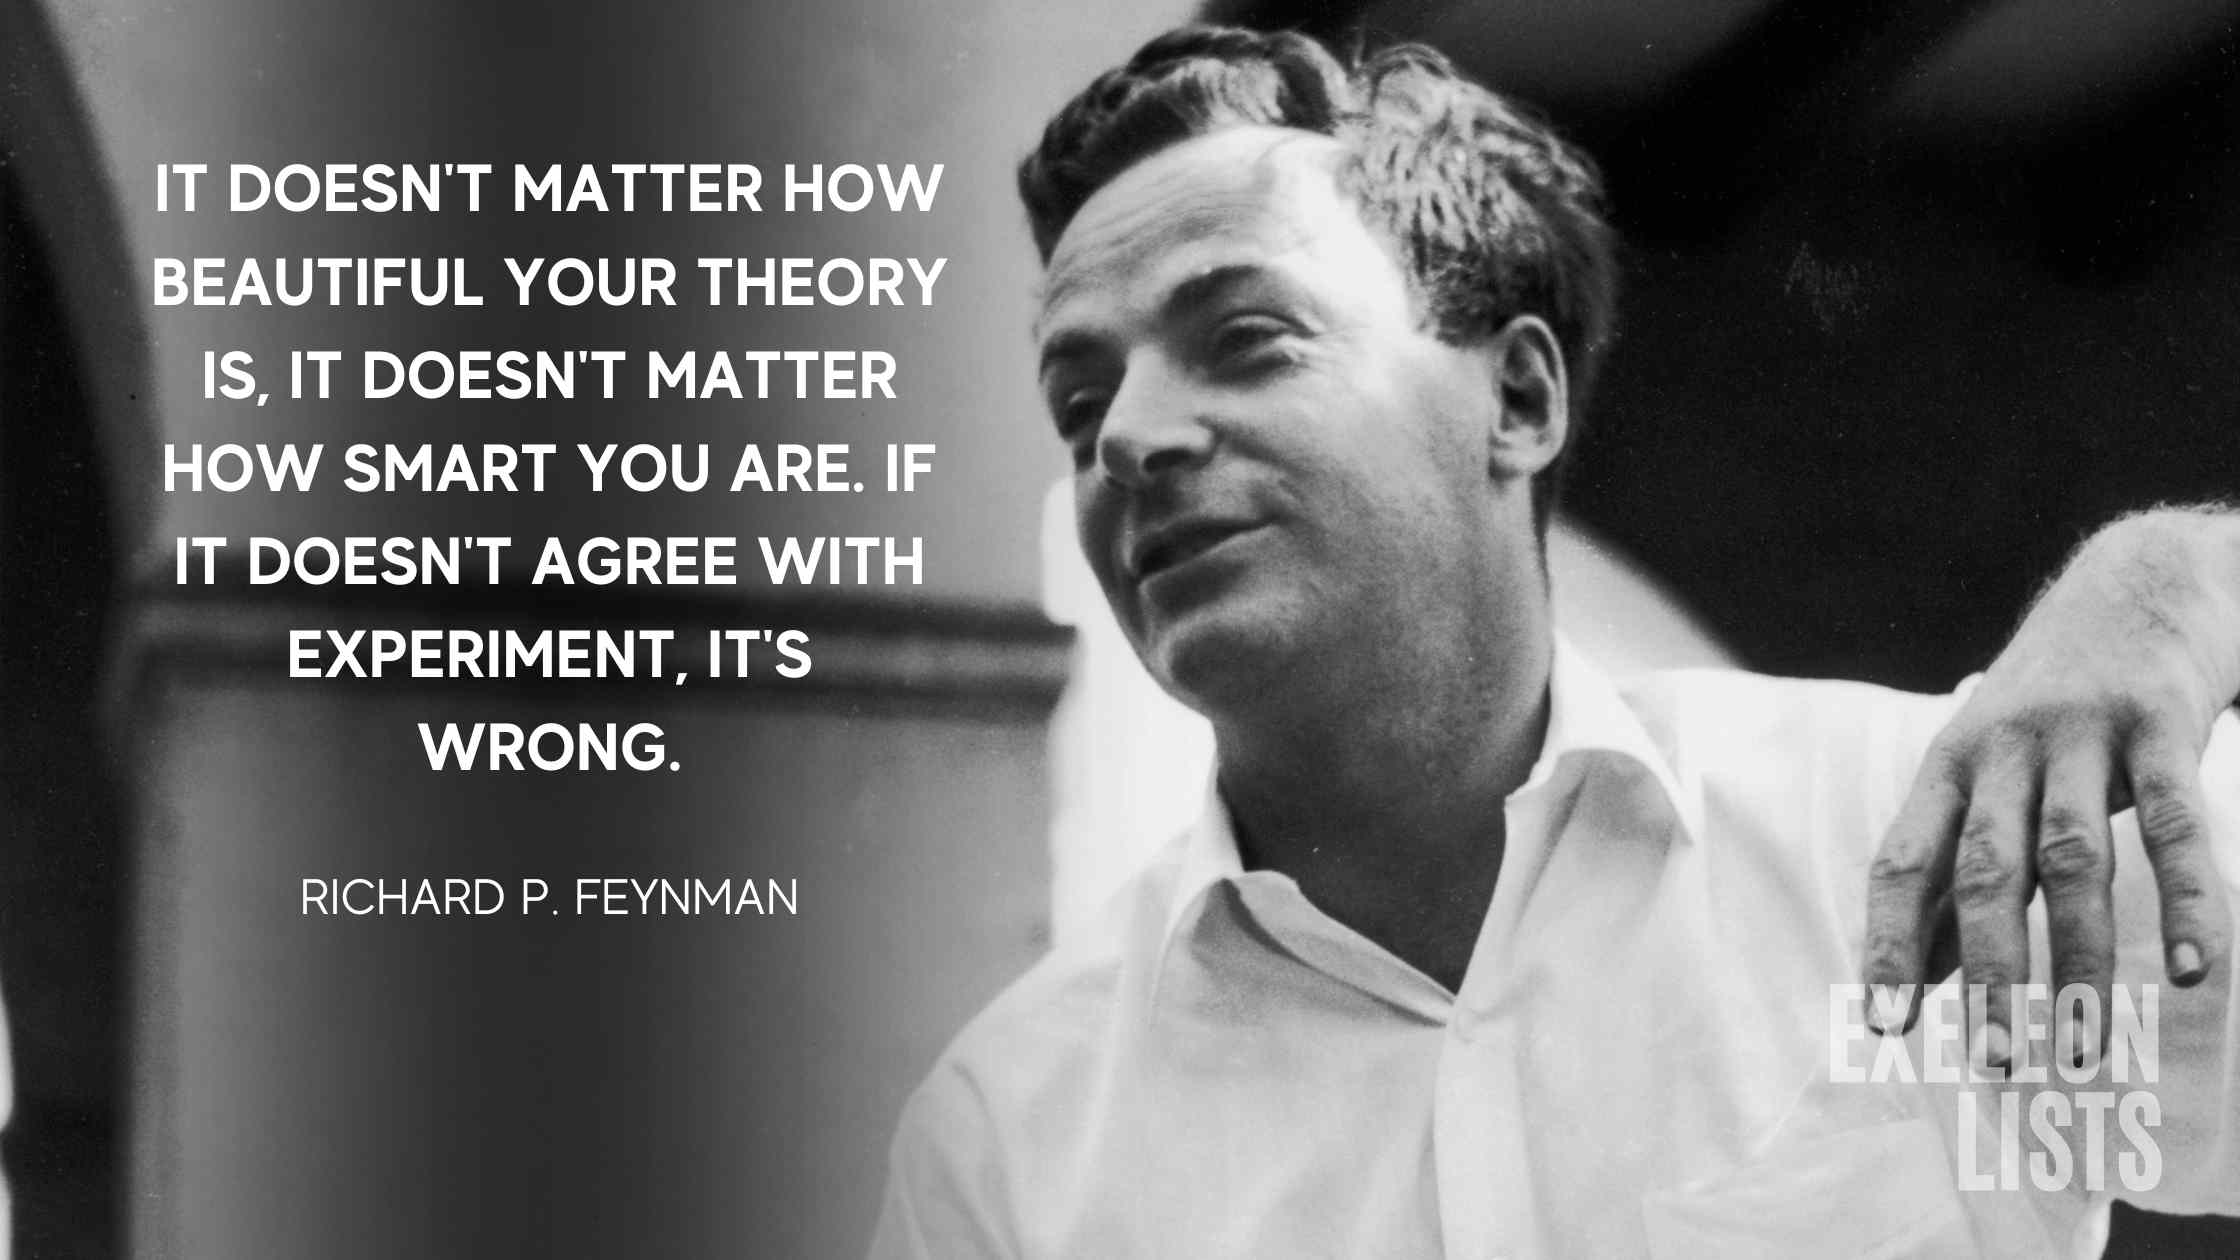 Richard Feynman American theoretical physicist